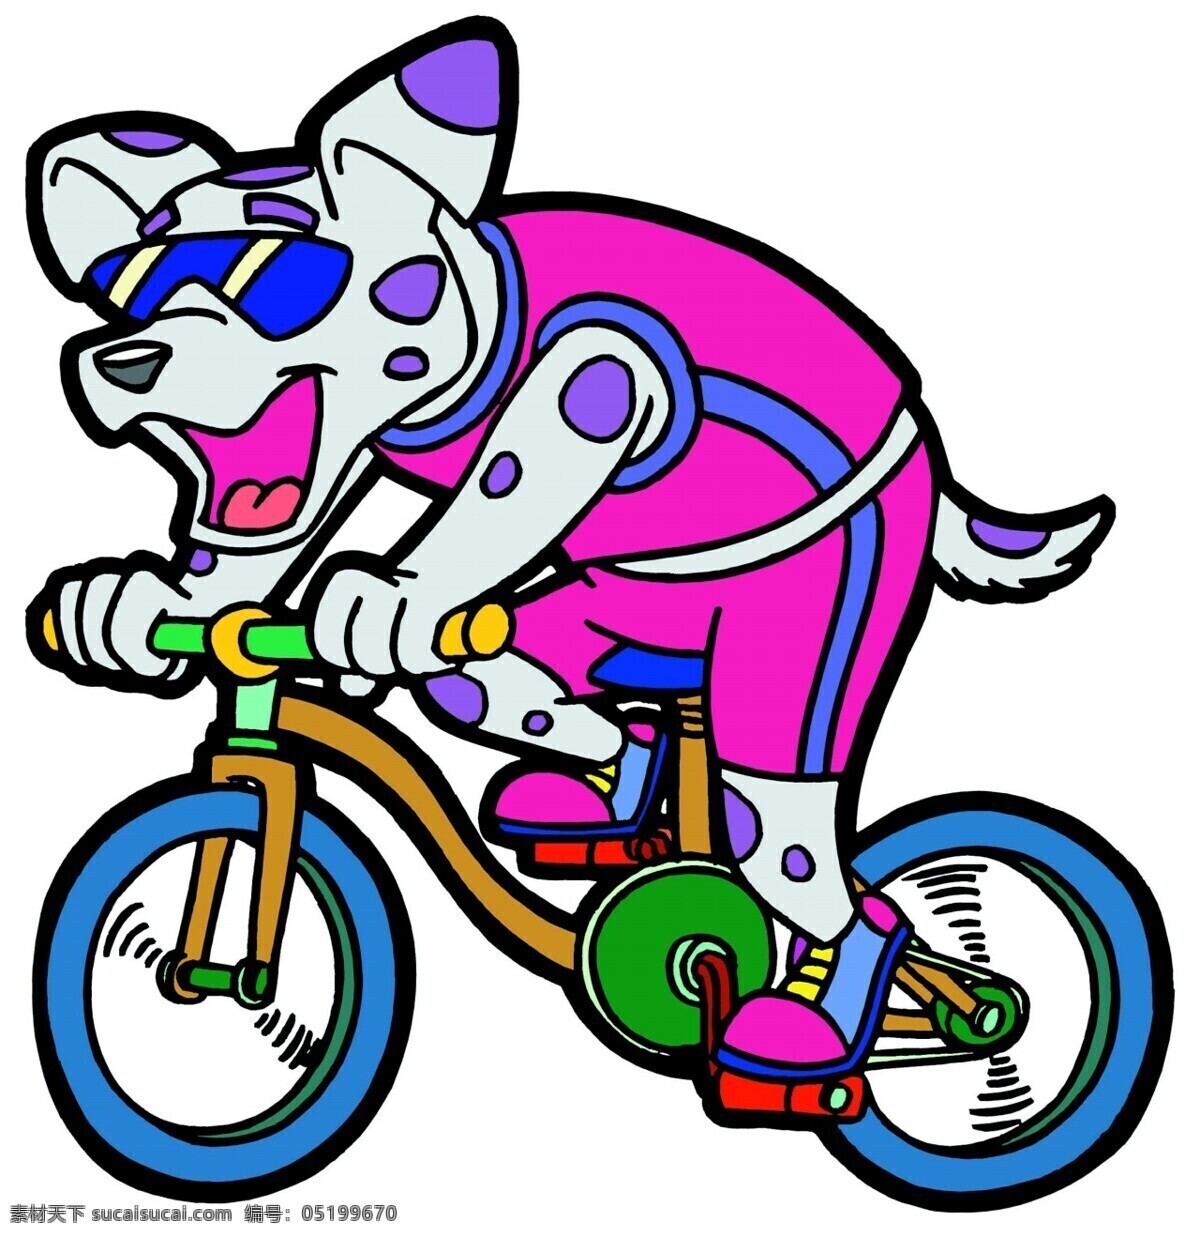 花 豹 骑车 儿童绘画素材 卡通小动物 花豹骑车图片 卡通 图画 动物 造型 动漫 可爱